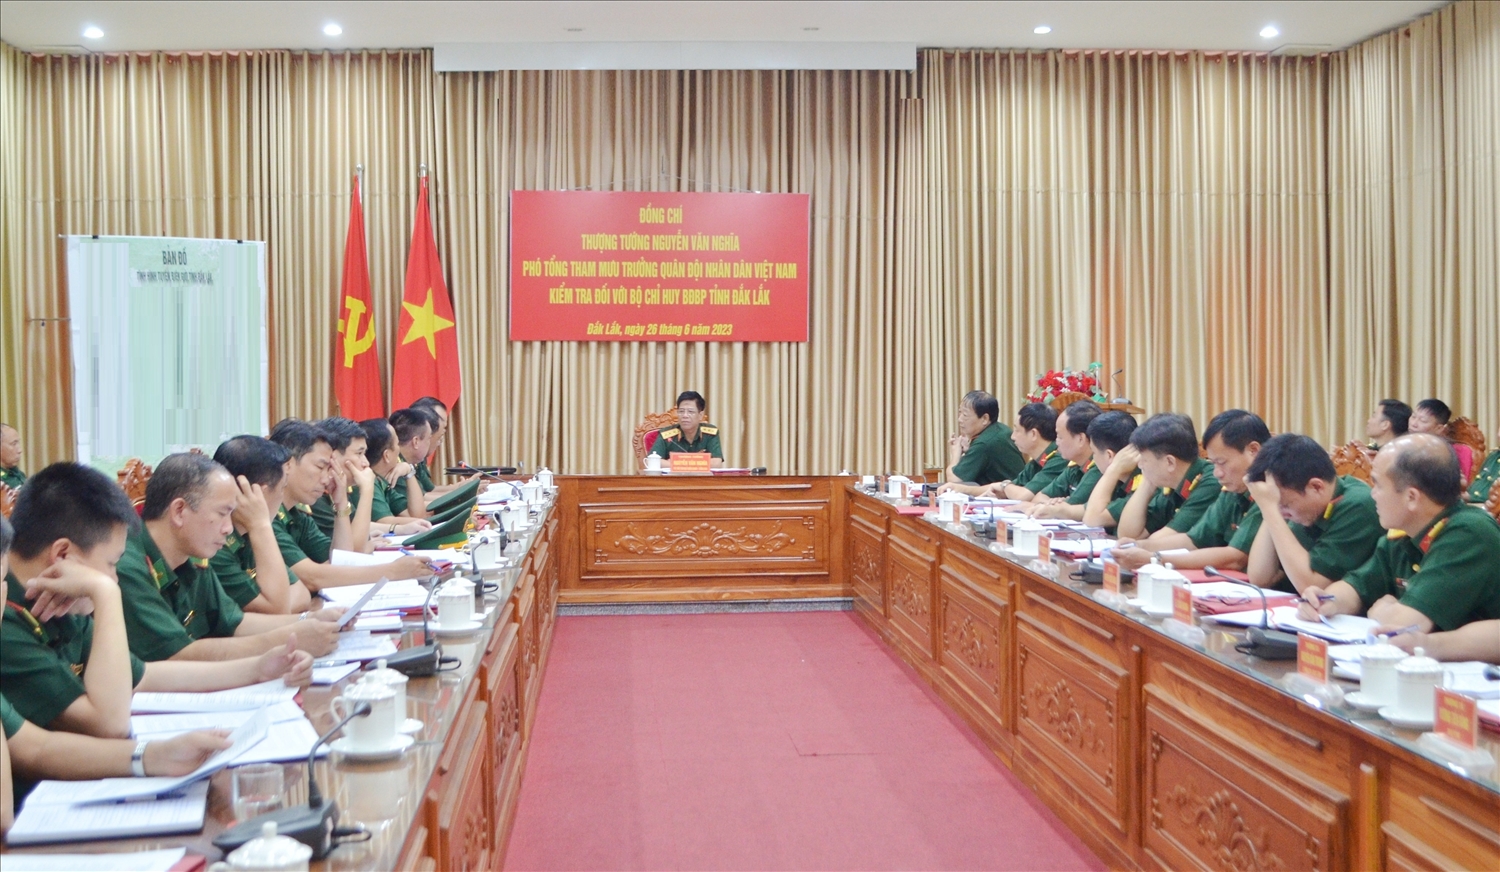 Đoàn công tác của Bộ Quốc phòng kiểm tra tại Bộ Chỉ huy BĐBP tỉnh Đắk Lắk